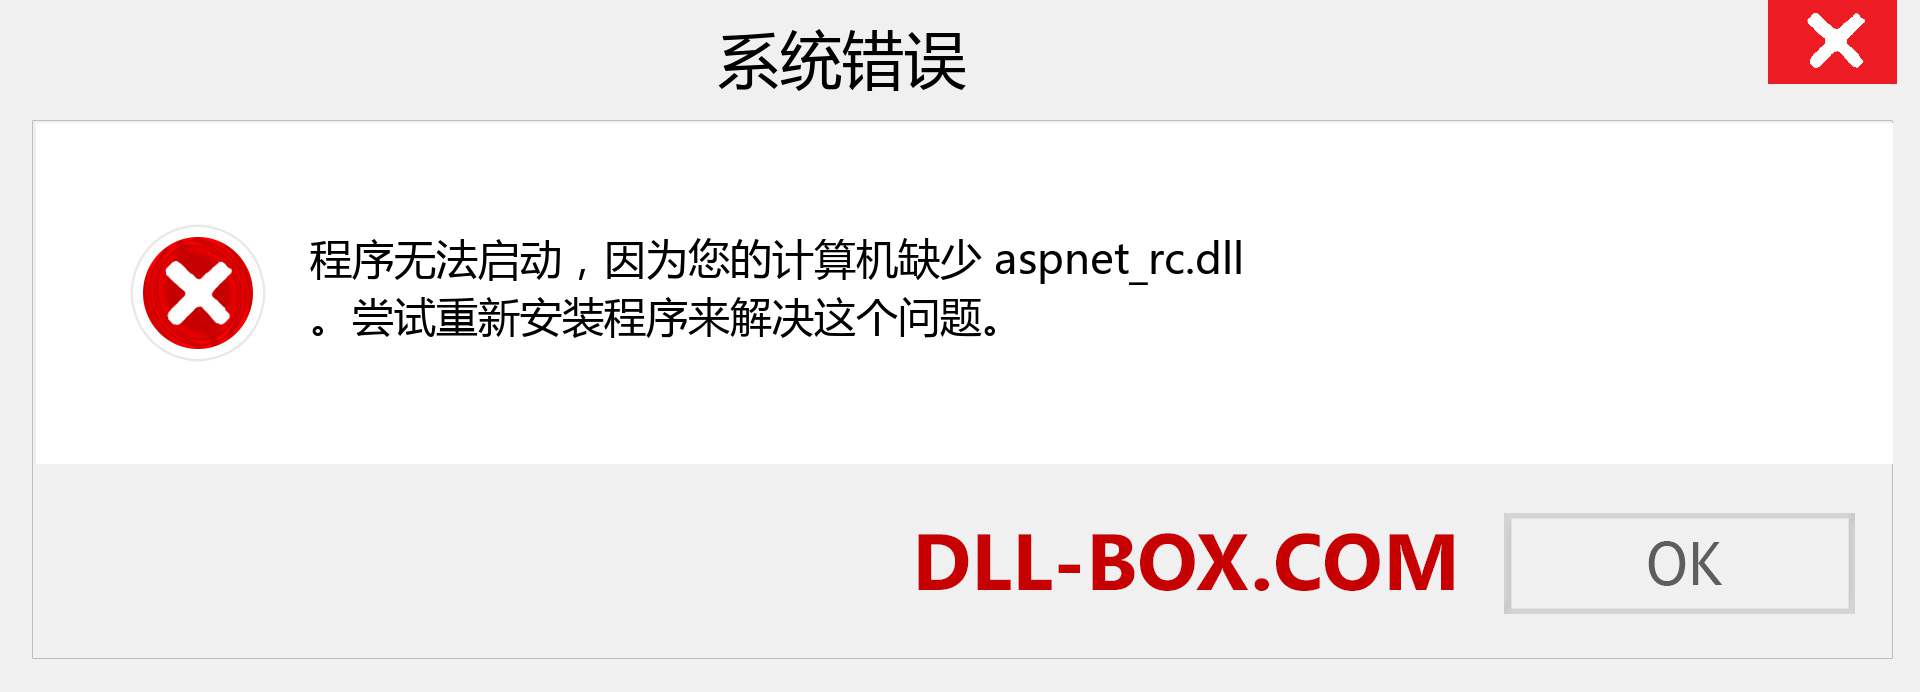 aspnet_rc.dll 文件丢失？。 适用于 Windows 7、8、10 的下载 - 修复 Windows、照片、图像上的 aspnet_rc dll 丢失错误